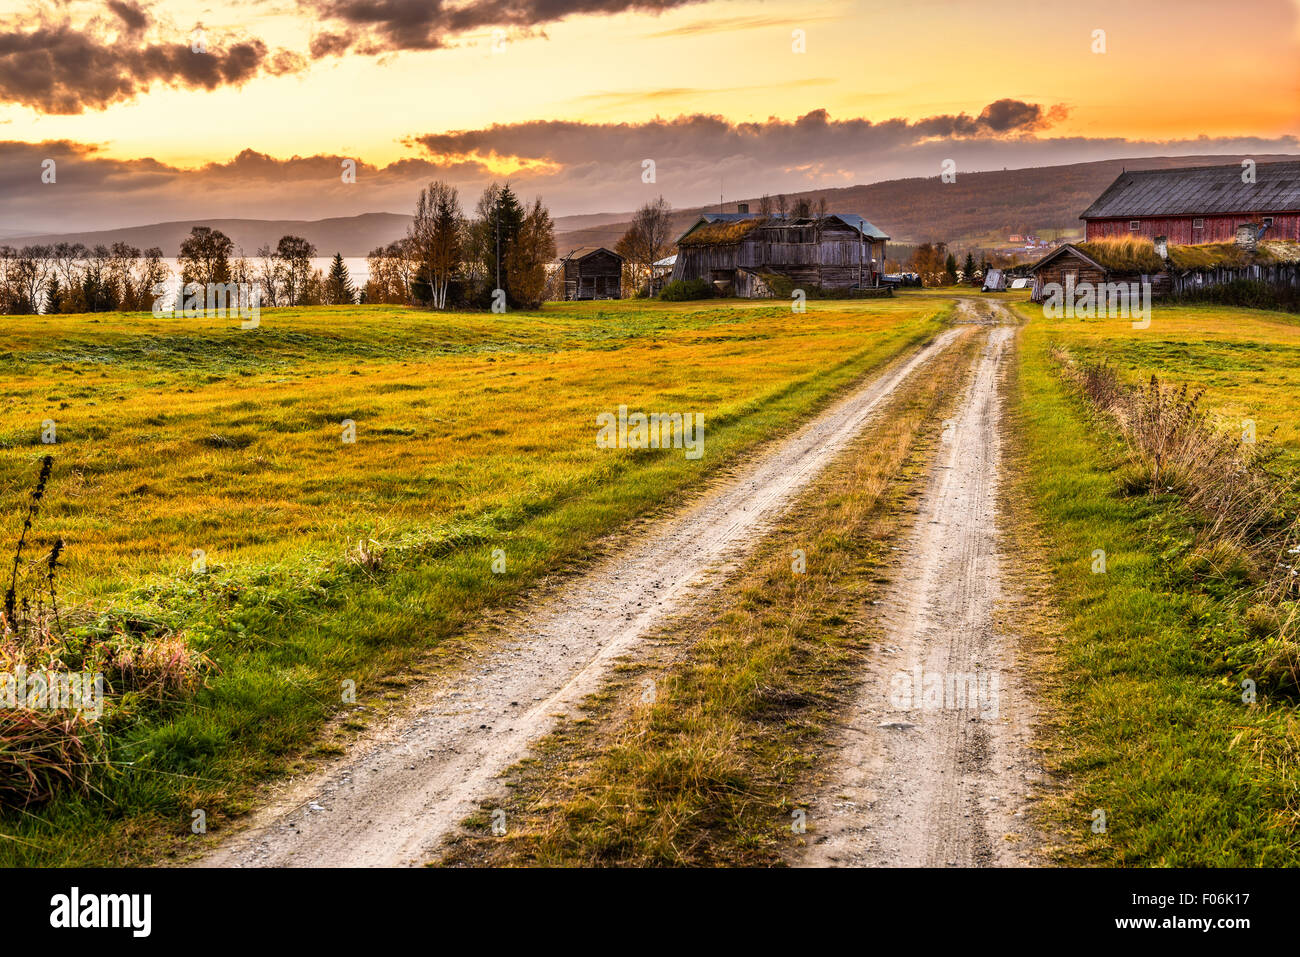 Ancienne ferme avec grange en bois emblématique et chemin rural au coucher du soleil en Norvège Banque D'Images